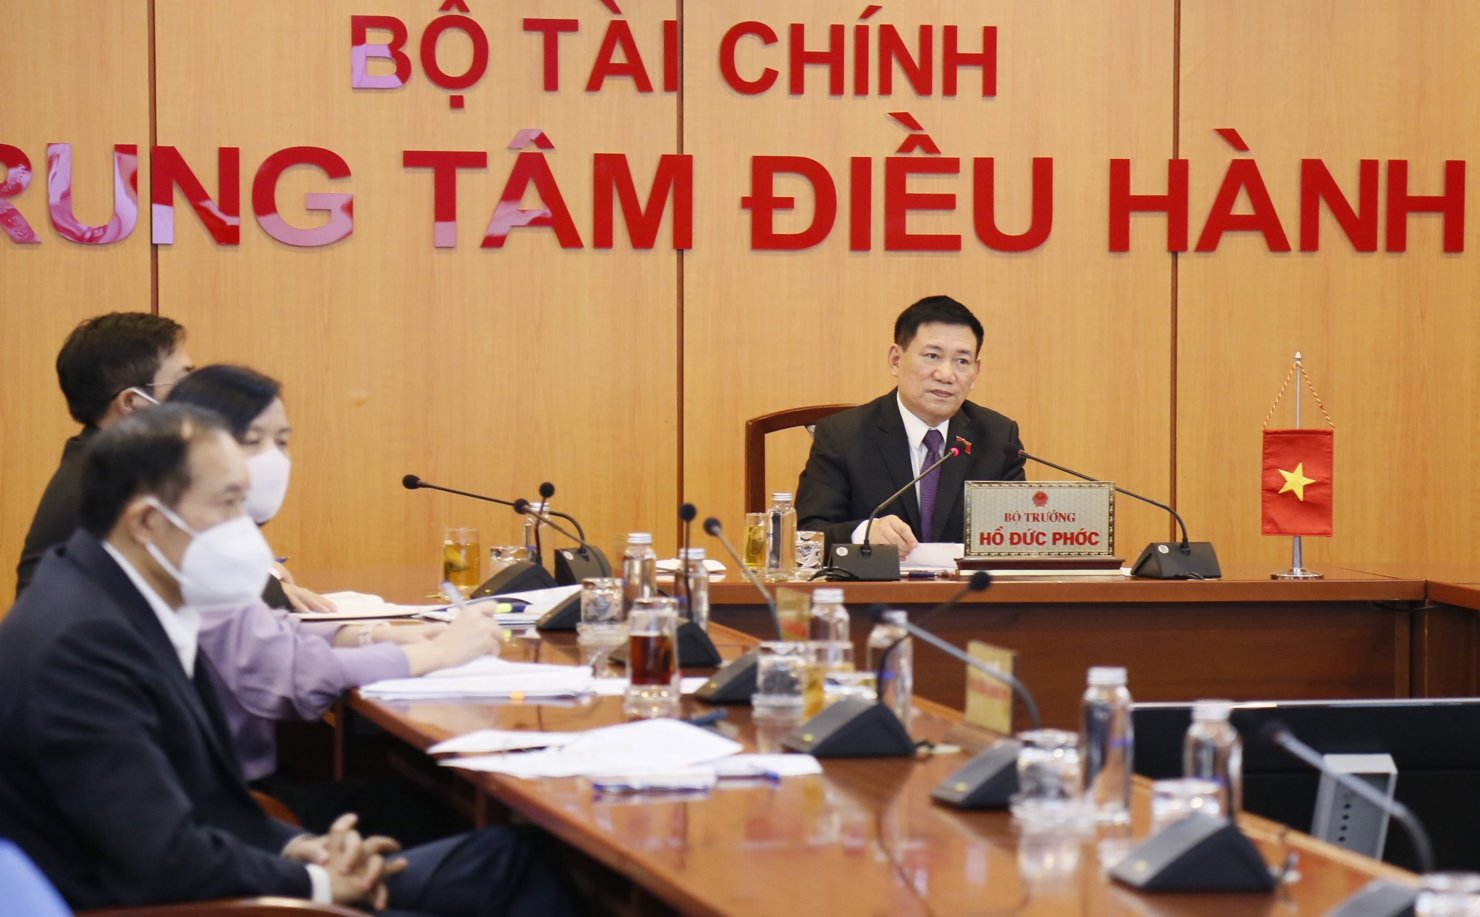 Bộ trưởng Bộ Tài chính Hồ Đức Phớc tại điểm cầu Bộ Tài chính Việt Nam.